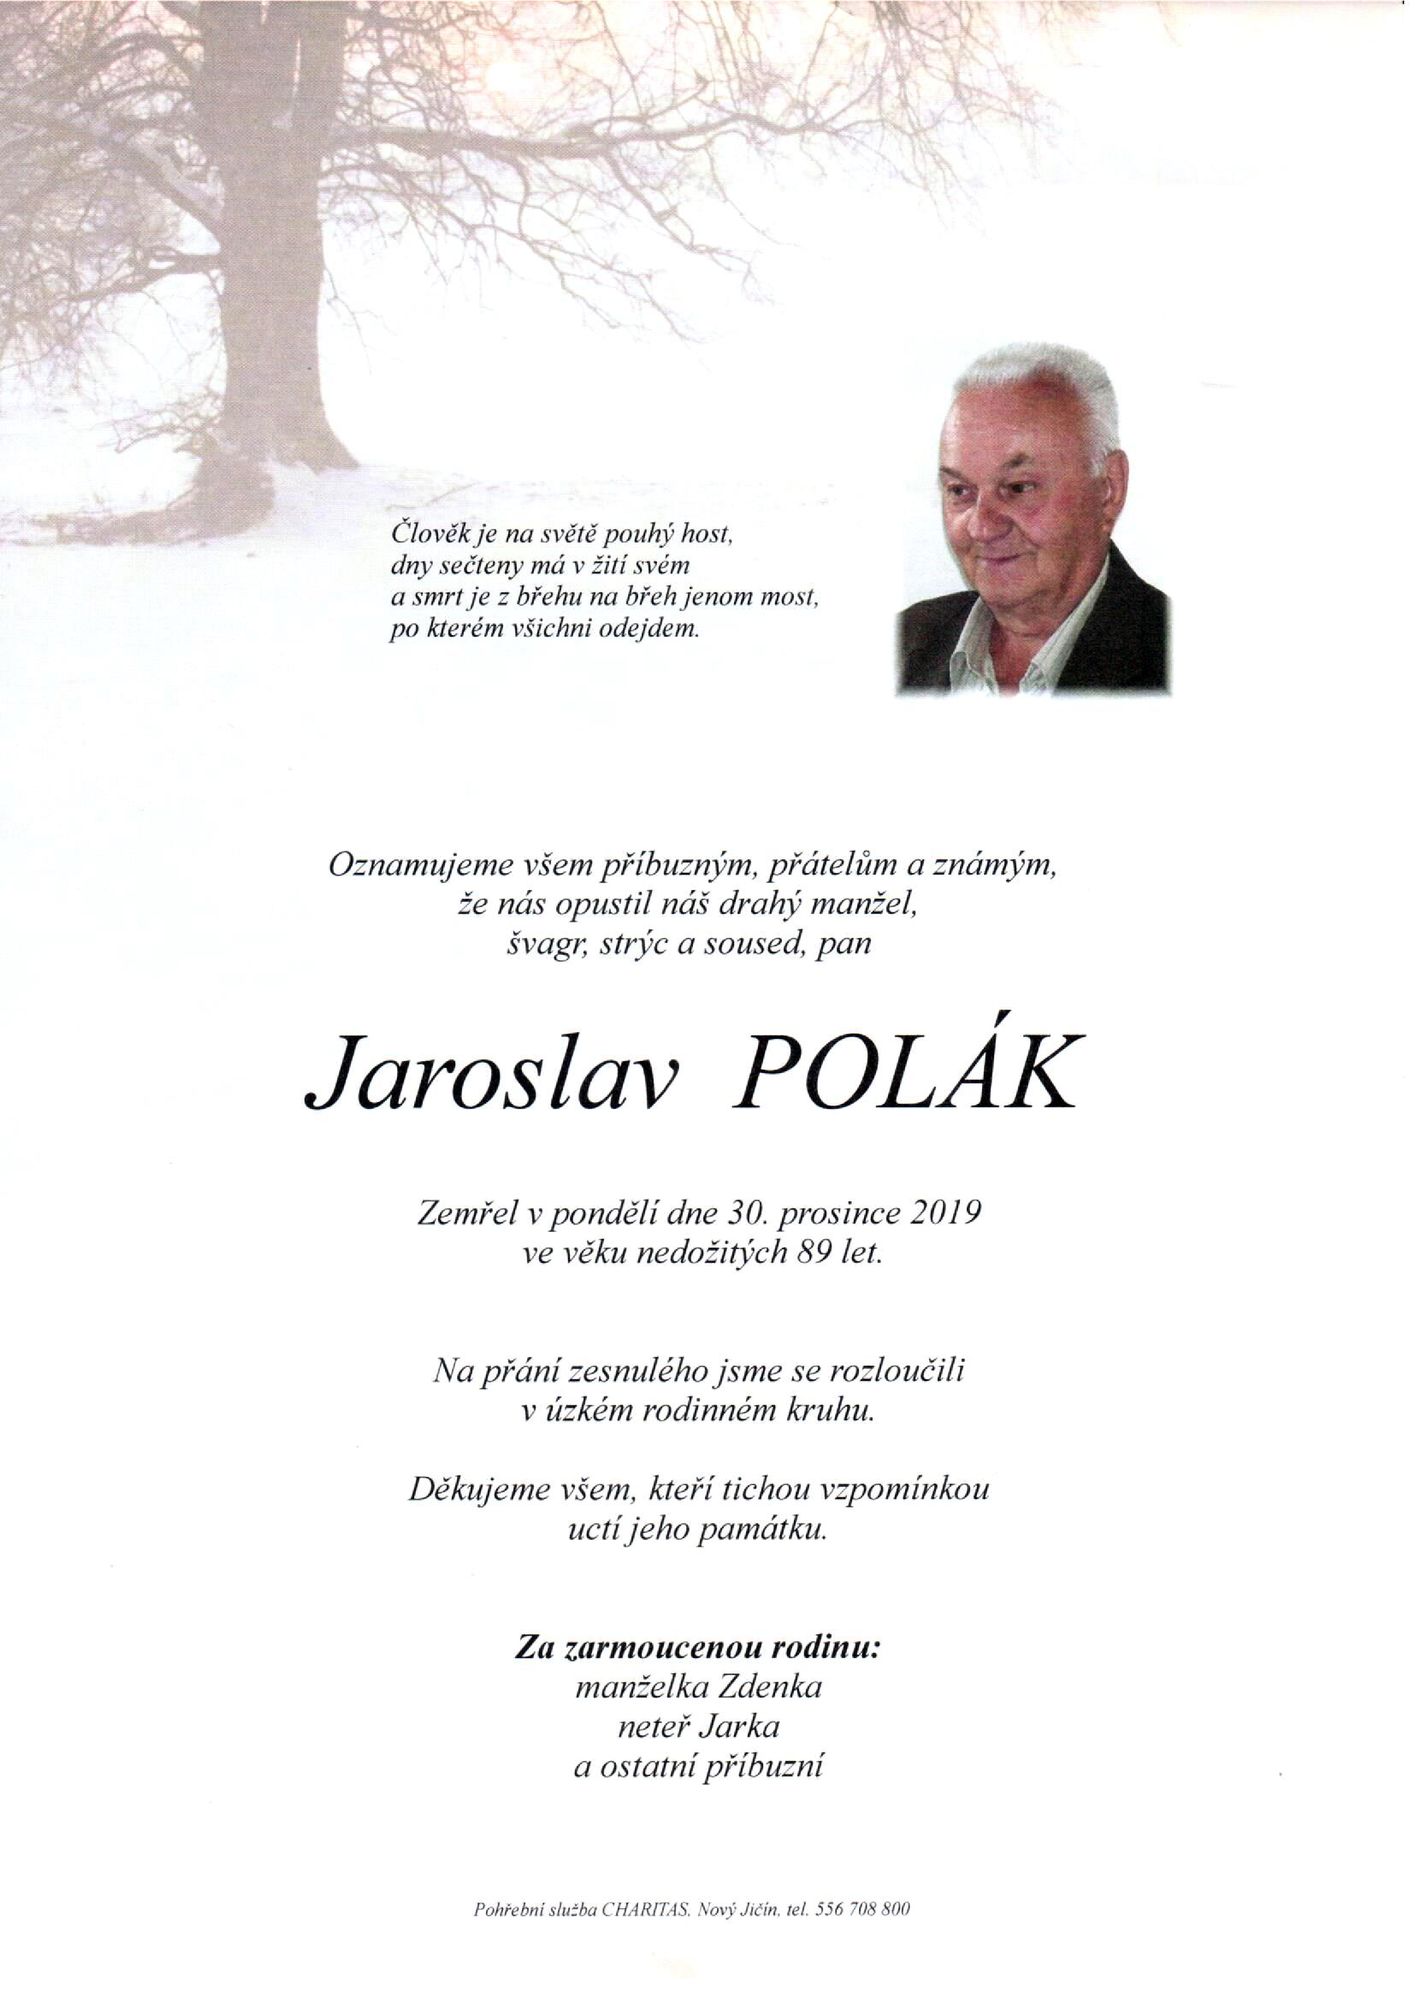 Jaroslav Polák